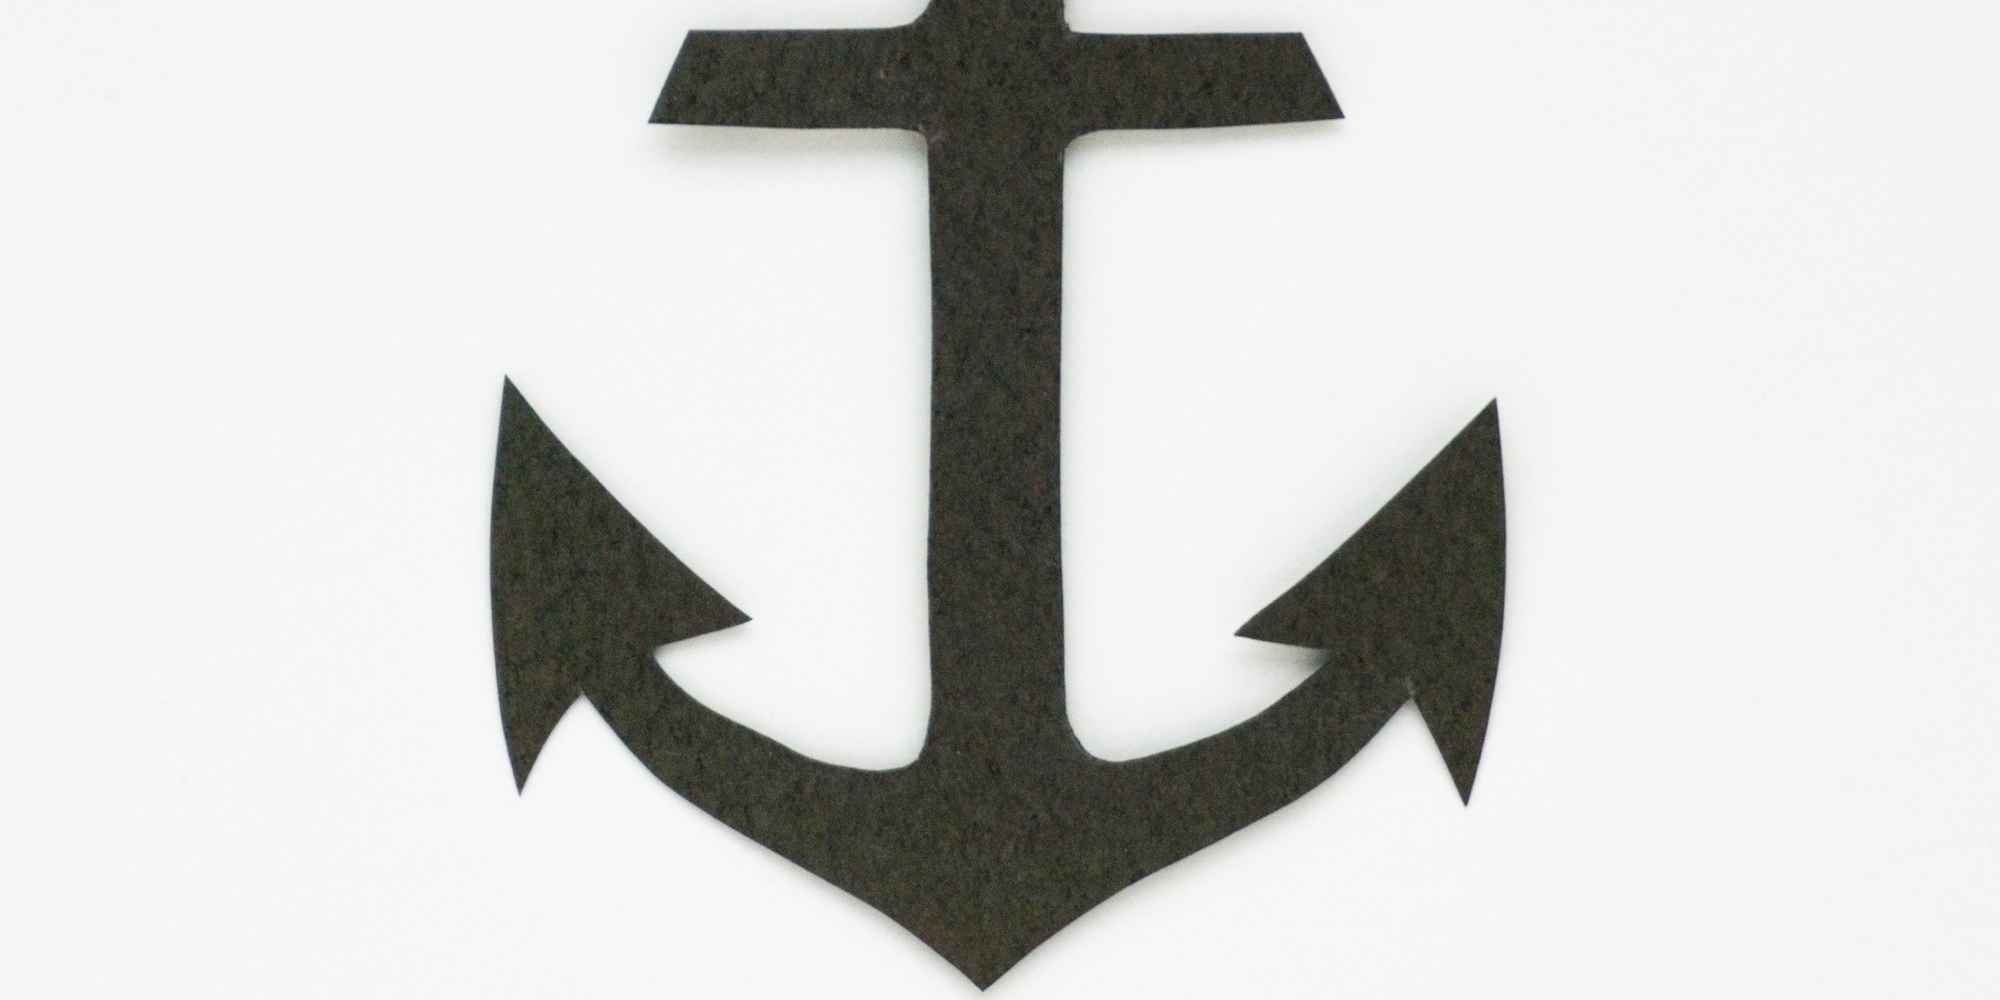 锚是一个具有永恒意义的象征，代表着稳定和安全感。它通常被用作船只、船锚或导航标志等的标志性元素。